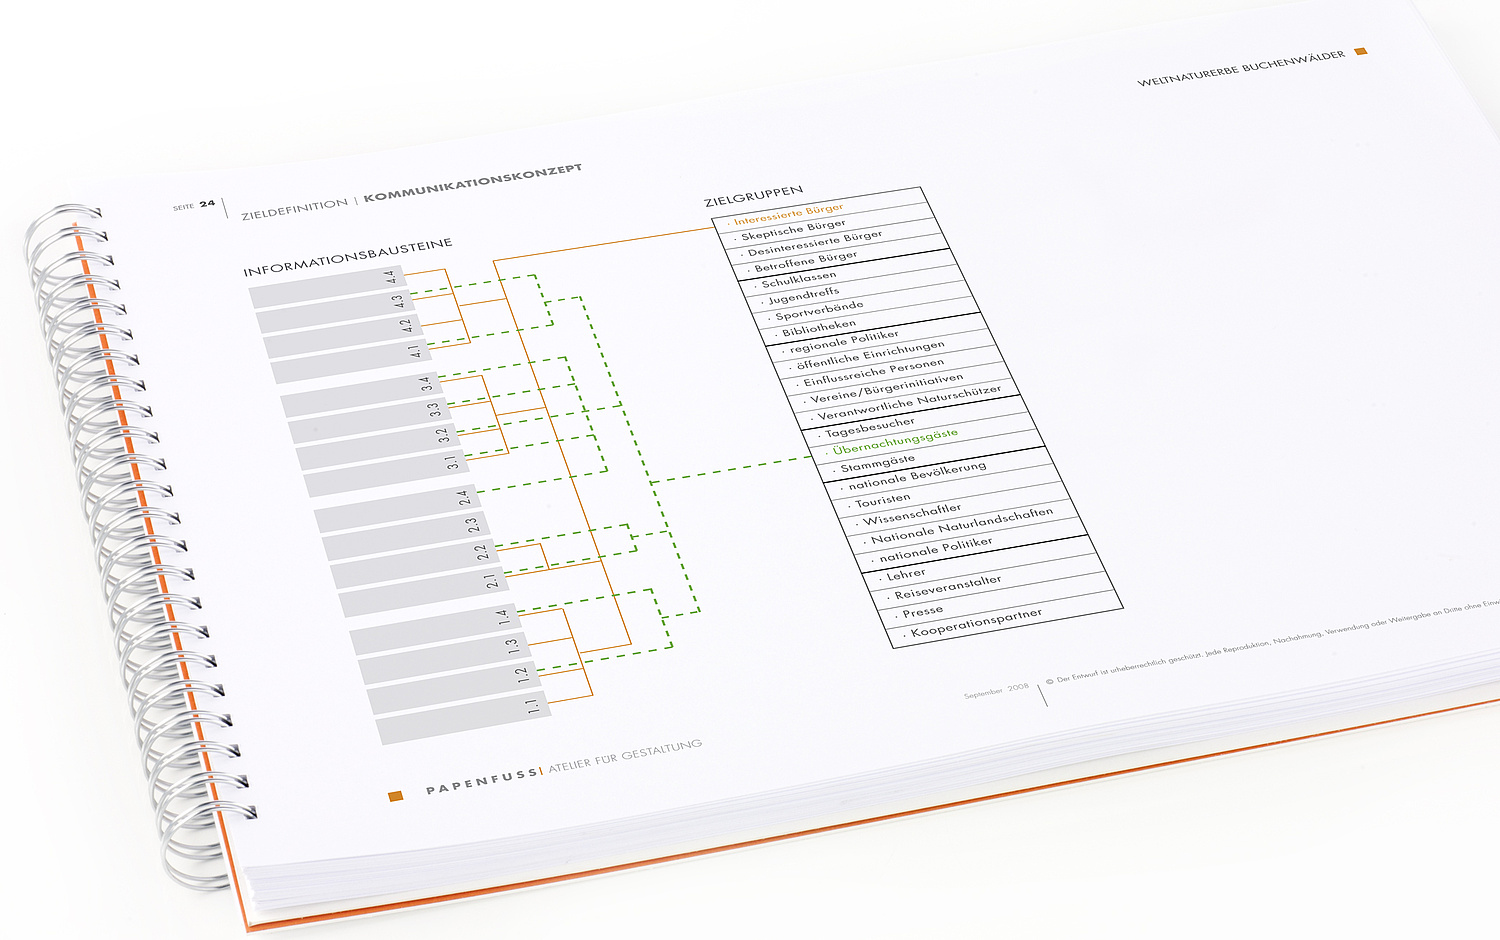 Das Bild zeigt einen Ausschnitt aus dem Kommunikationskonzept, in dem die Zuordnung von Informationsbausteinen zu Zielgruppen dargestellt ist. (© Papenfuss | Atelier)